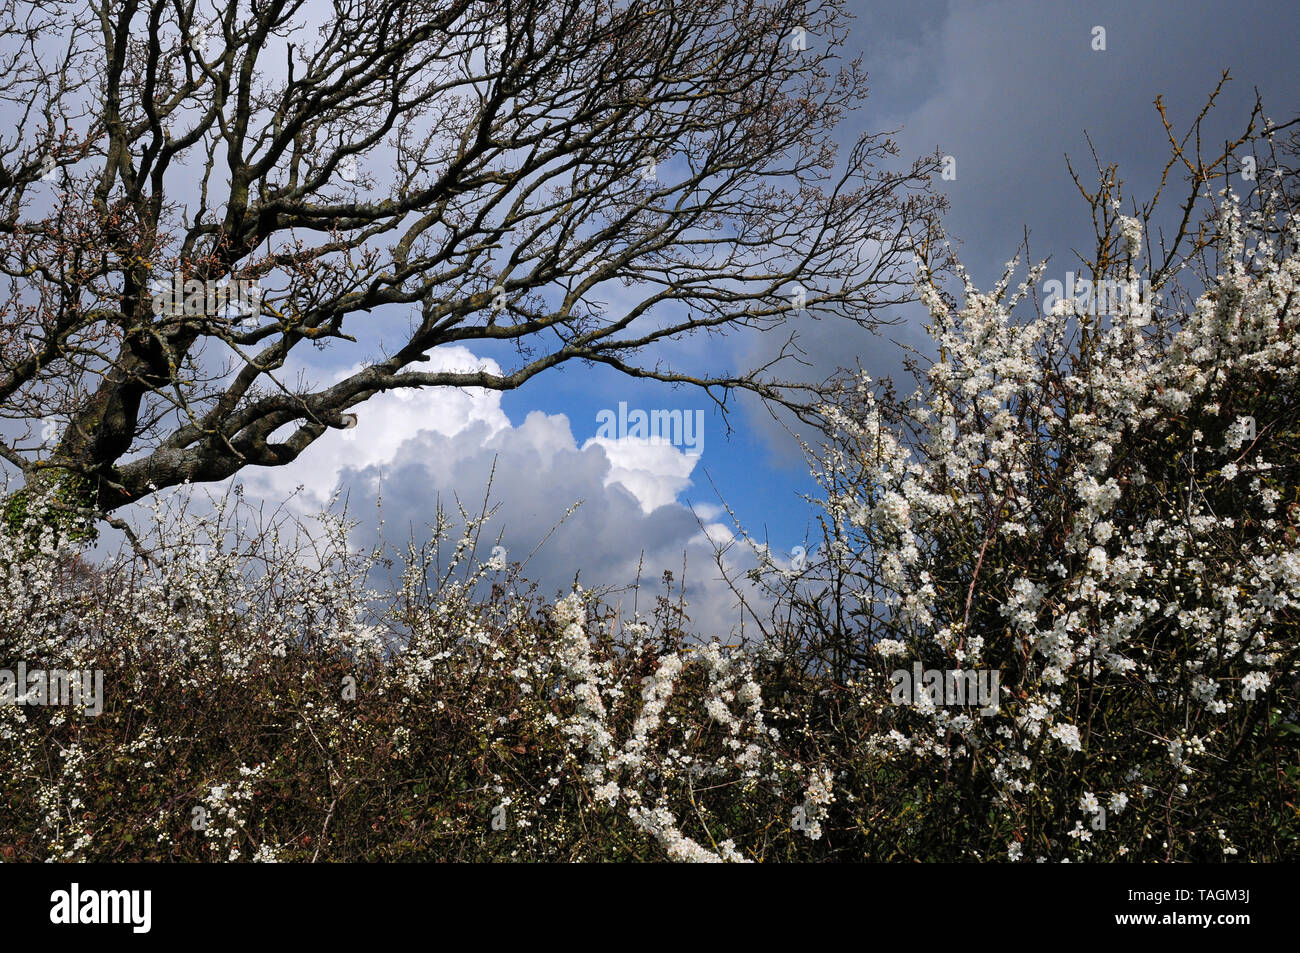 Cumulo nimbus clouds forming in Spring. Oak leaves emerging. Blackthorn in bloom. Stock Photo